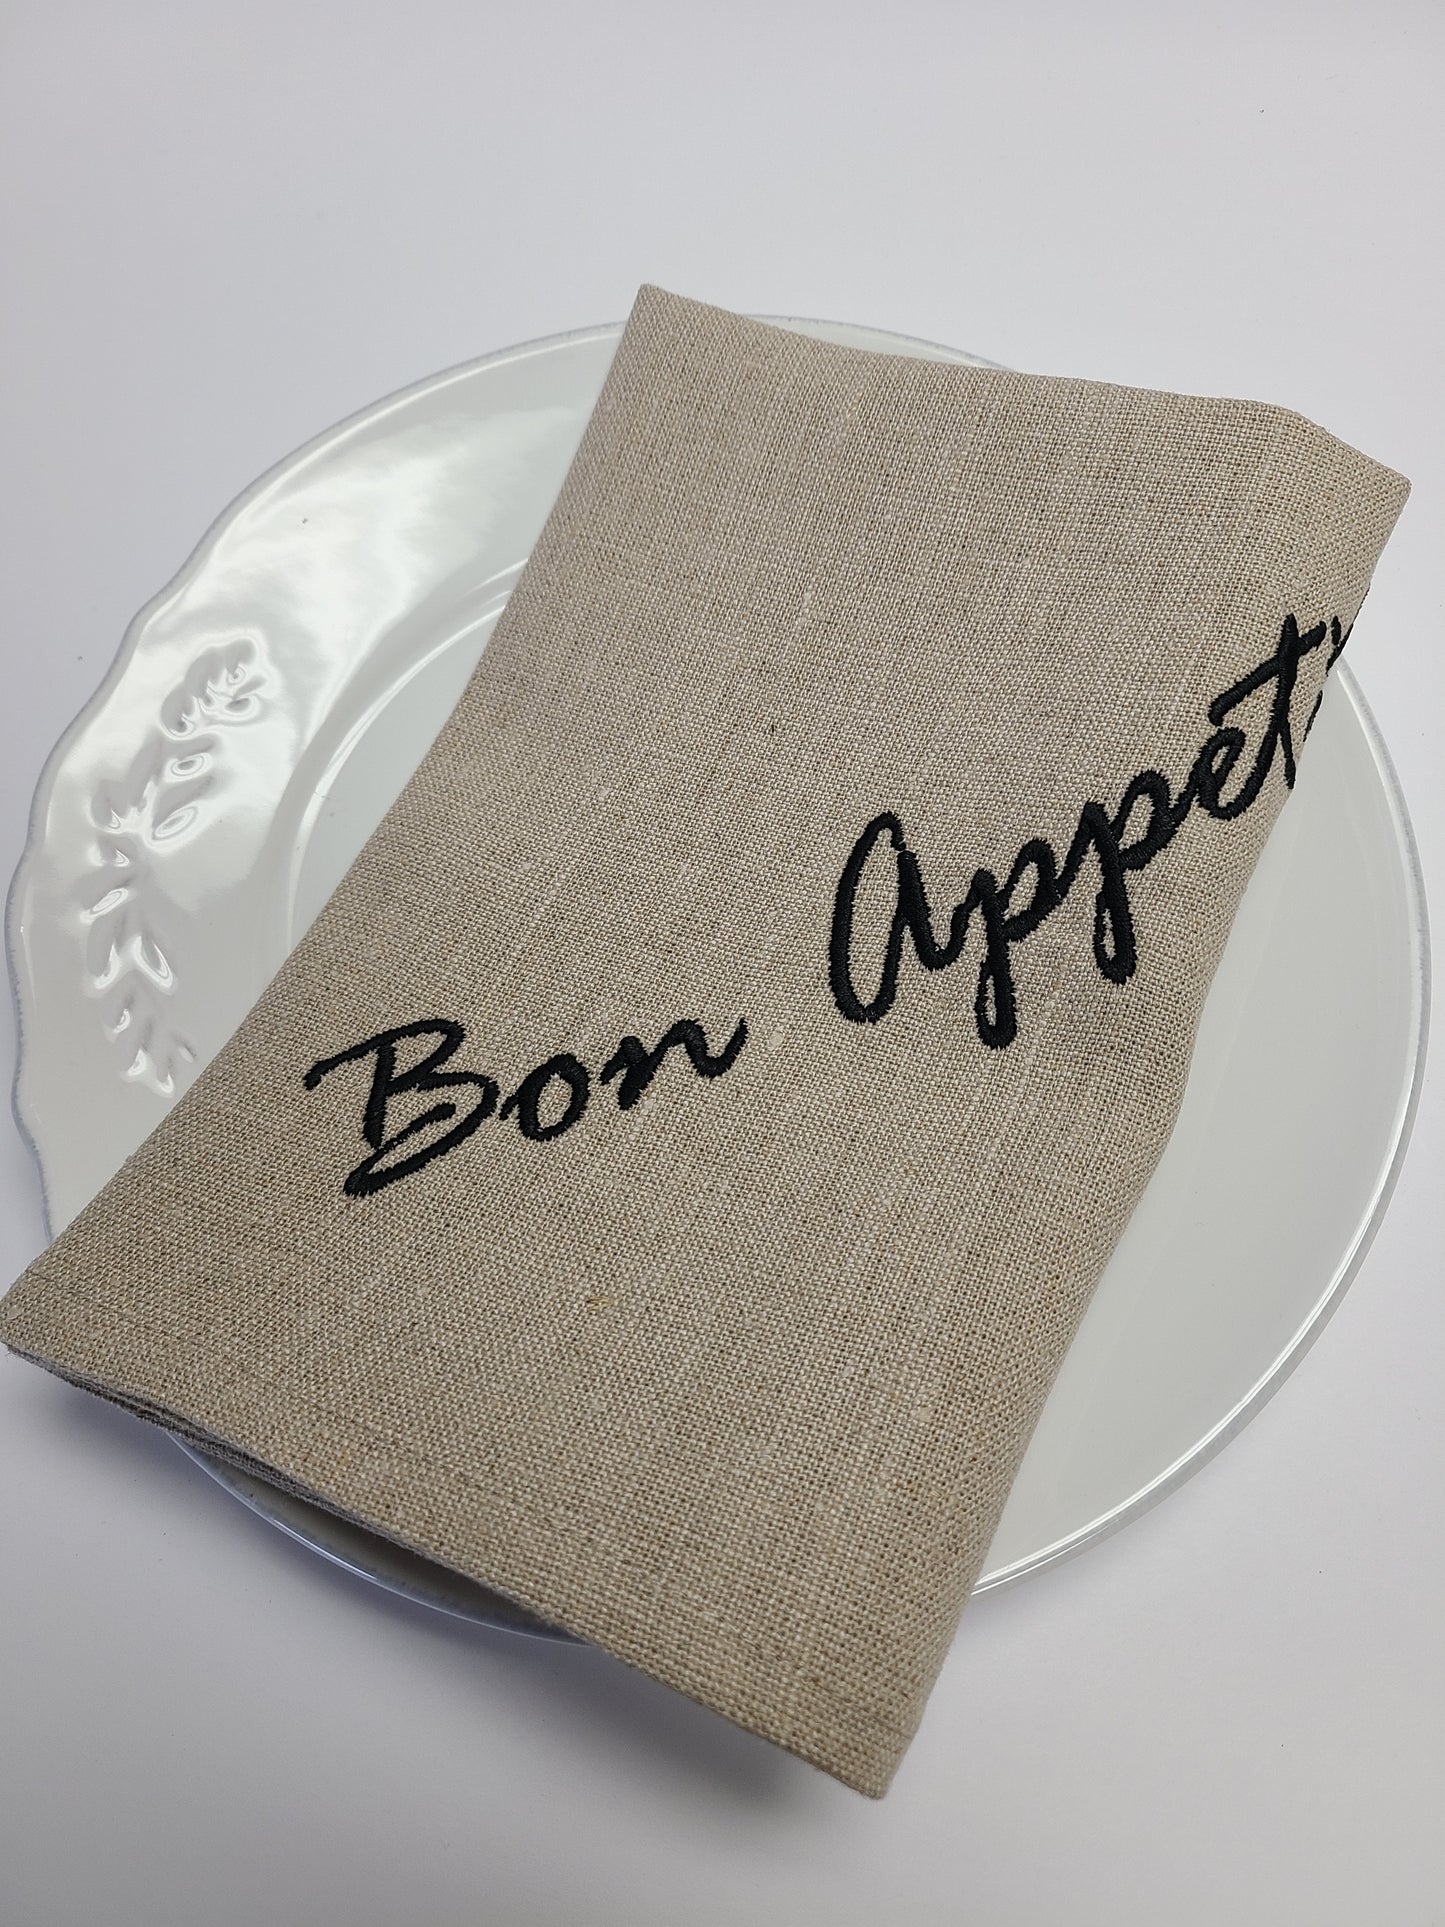 Bon Appetit Linen Napkin Set/4